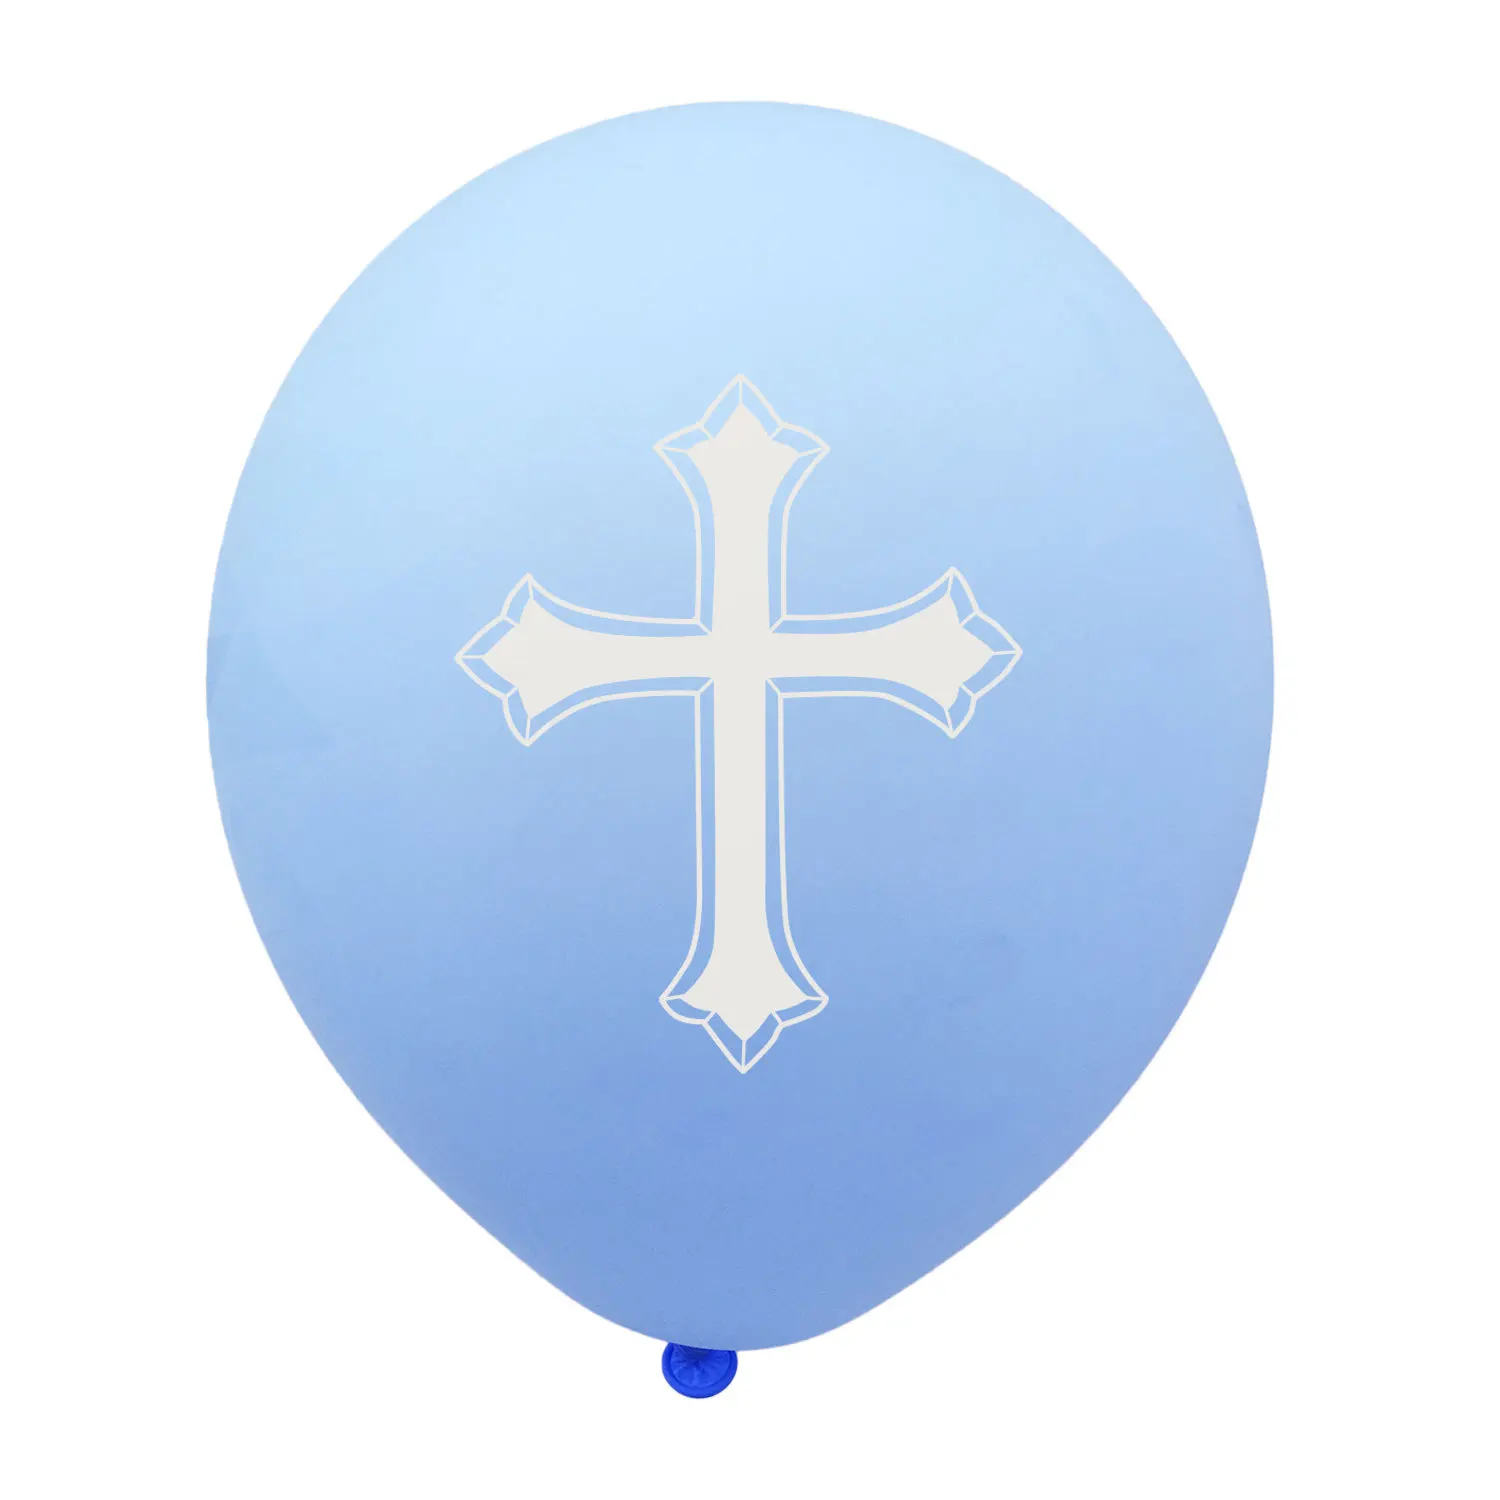 Крест на шаре. Шар и крест. Крестик на крестины мальчику. Крест с шариками. Воздушный крест.